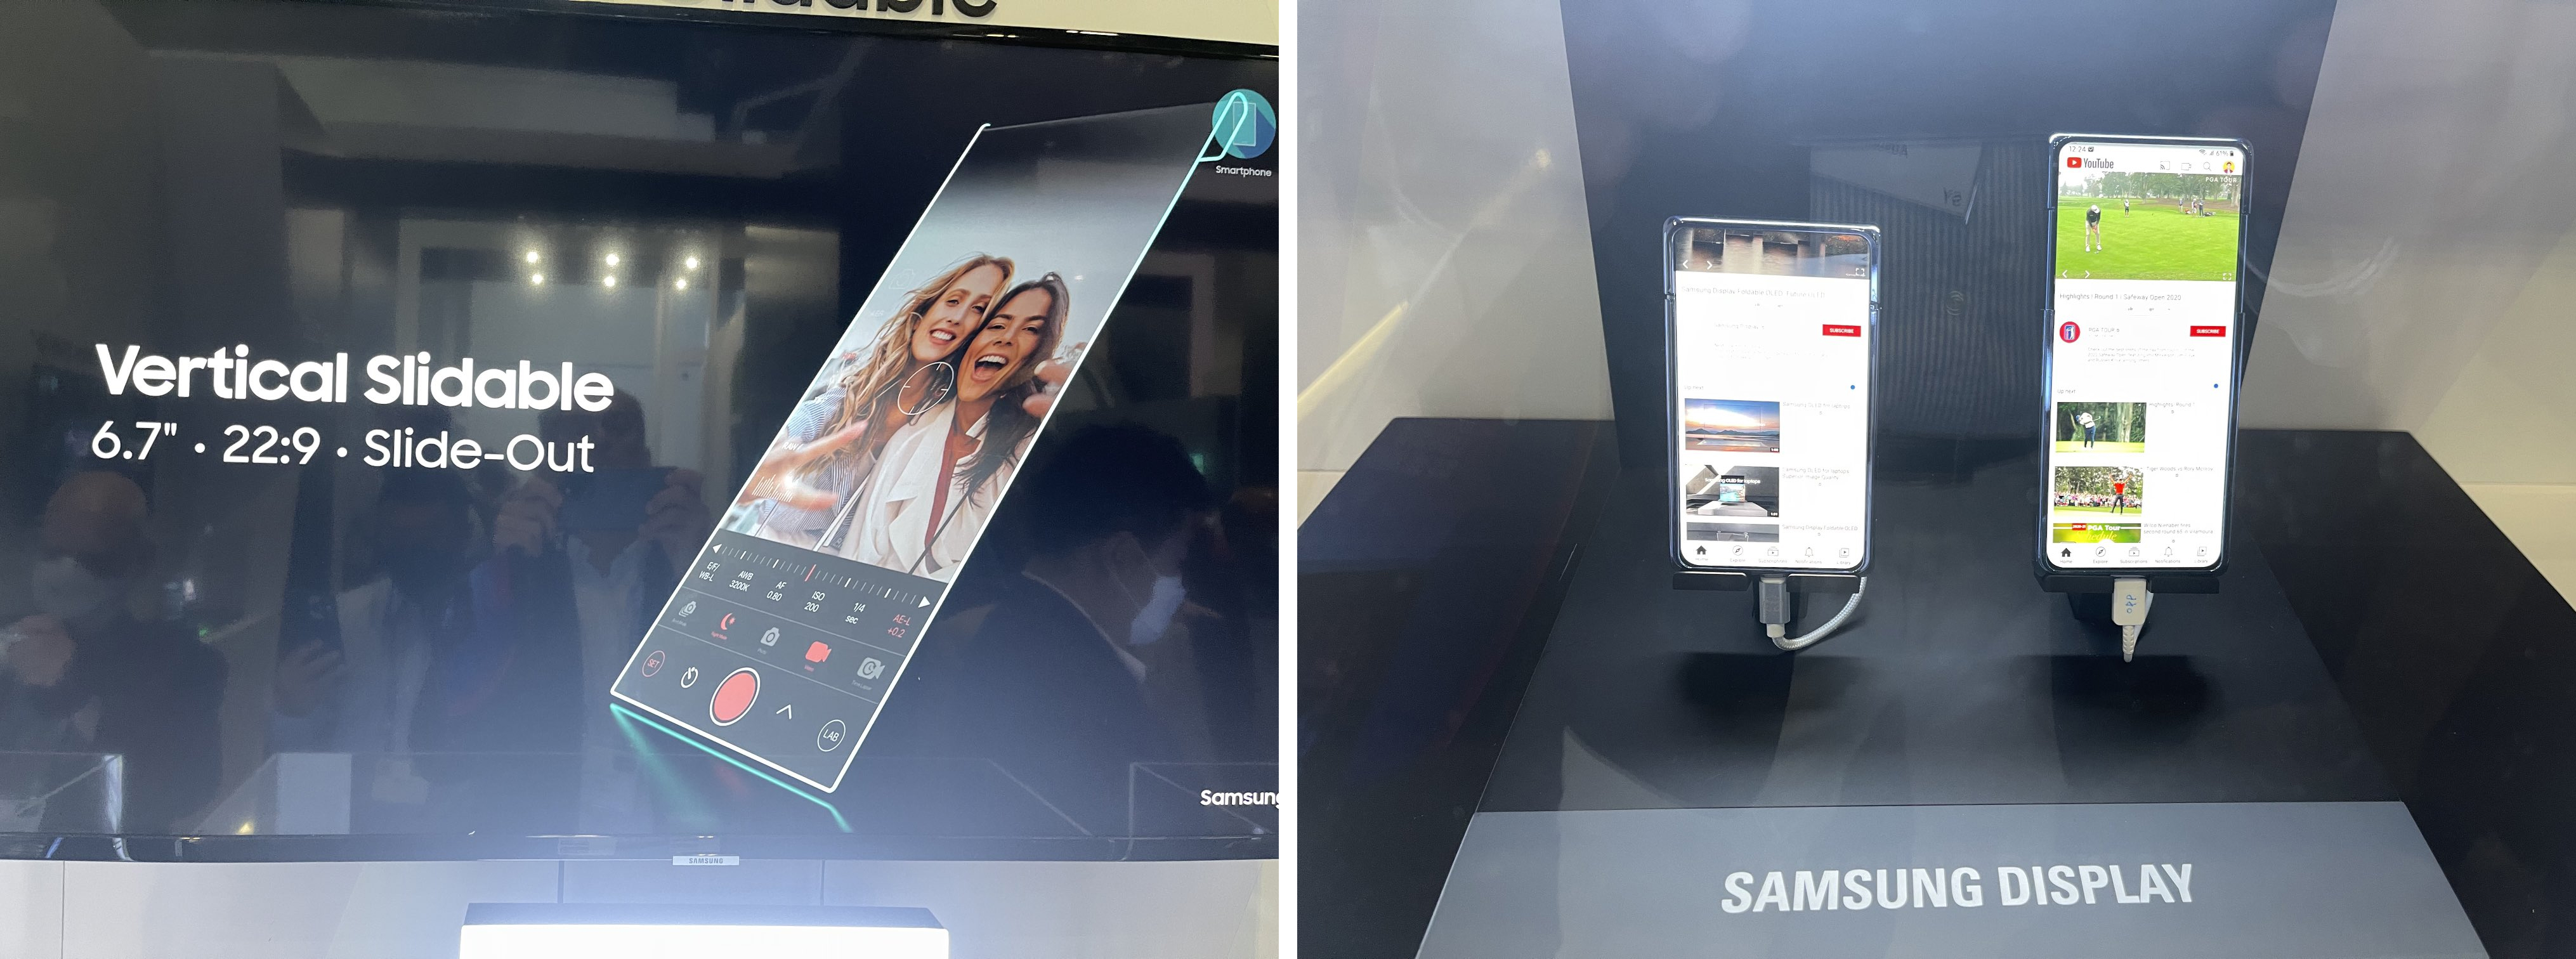 نمونه آزمایشی گوشی کشویی سامسونگ Samsung در دو مدل